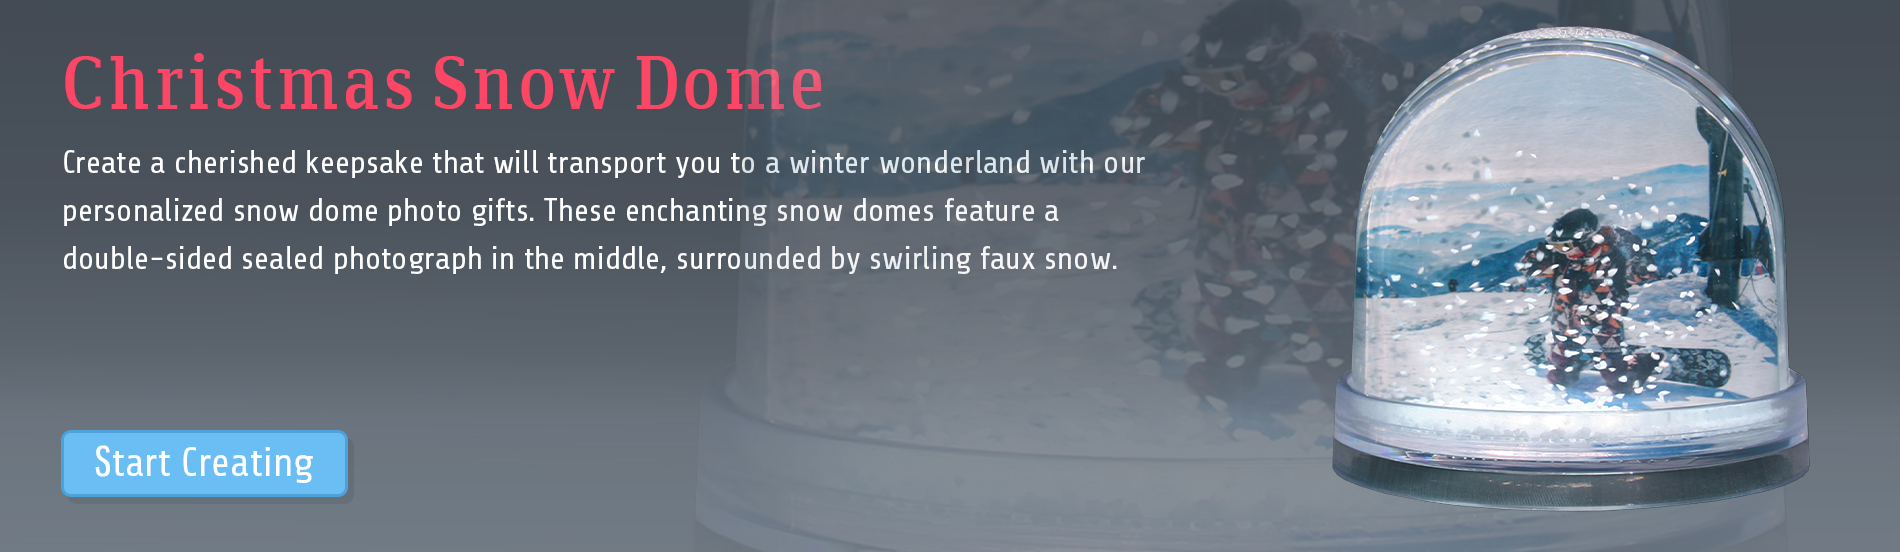 Christmas Snow Dome